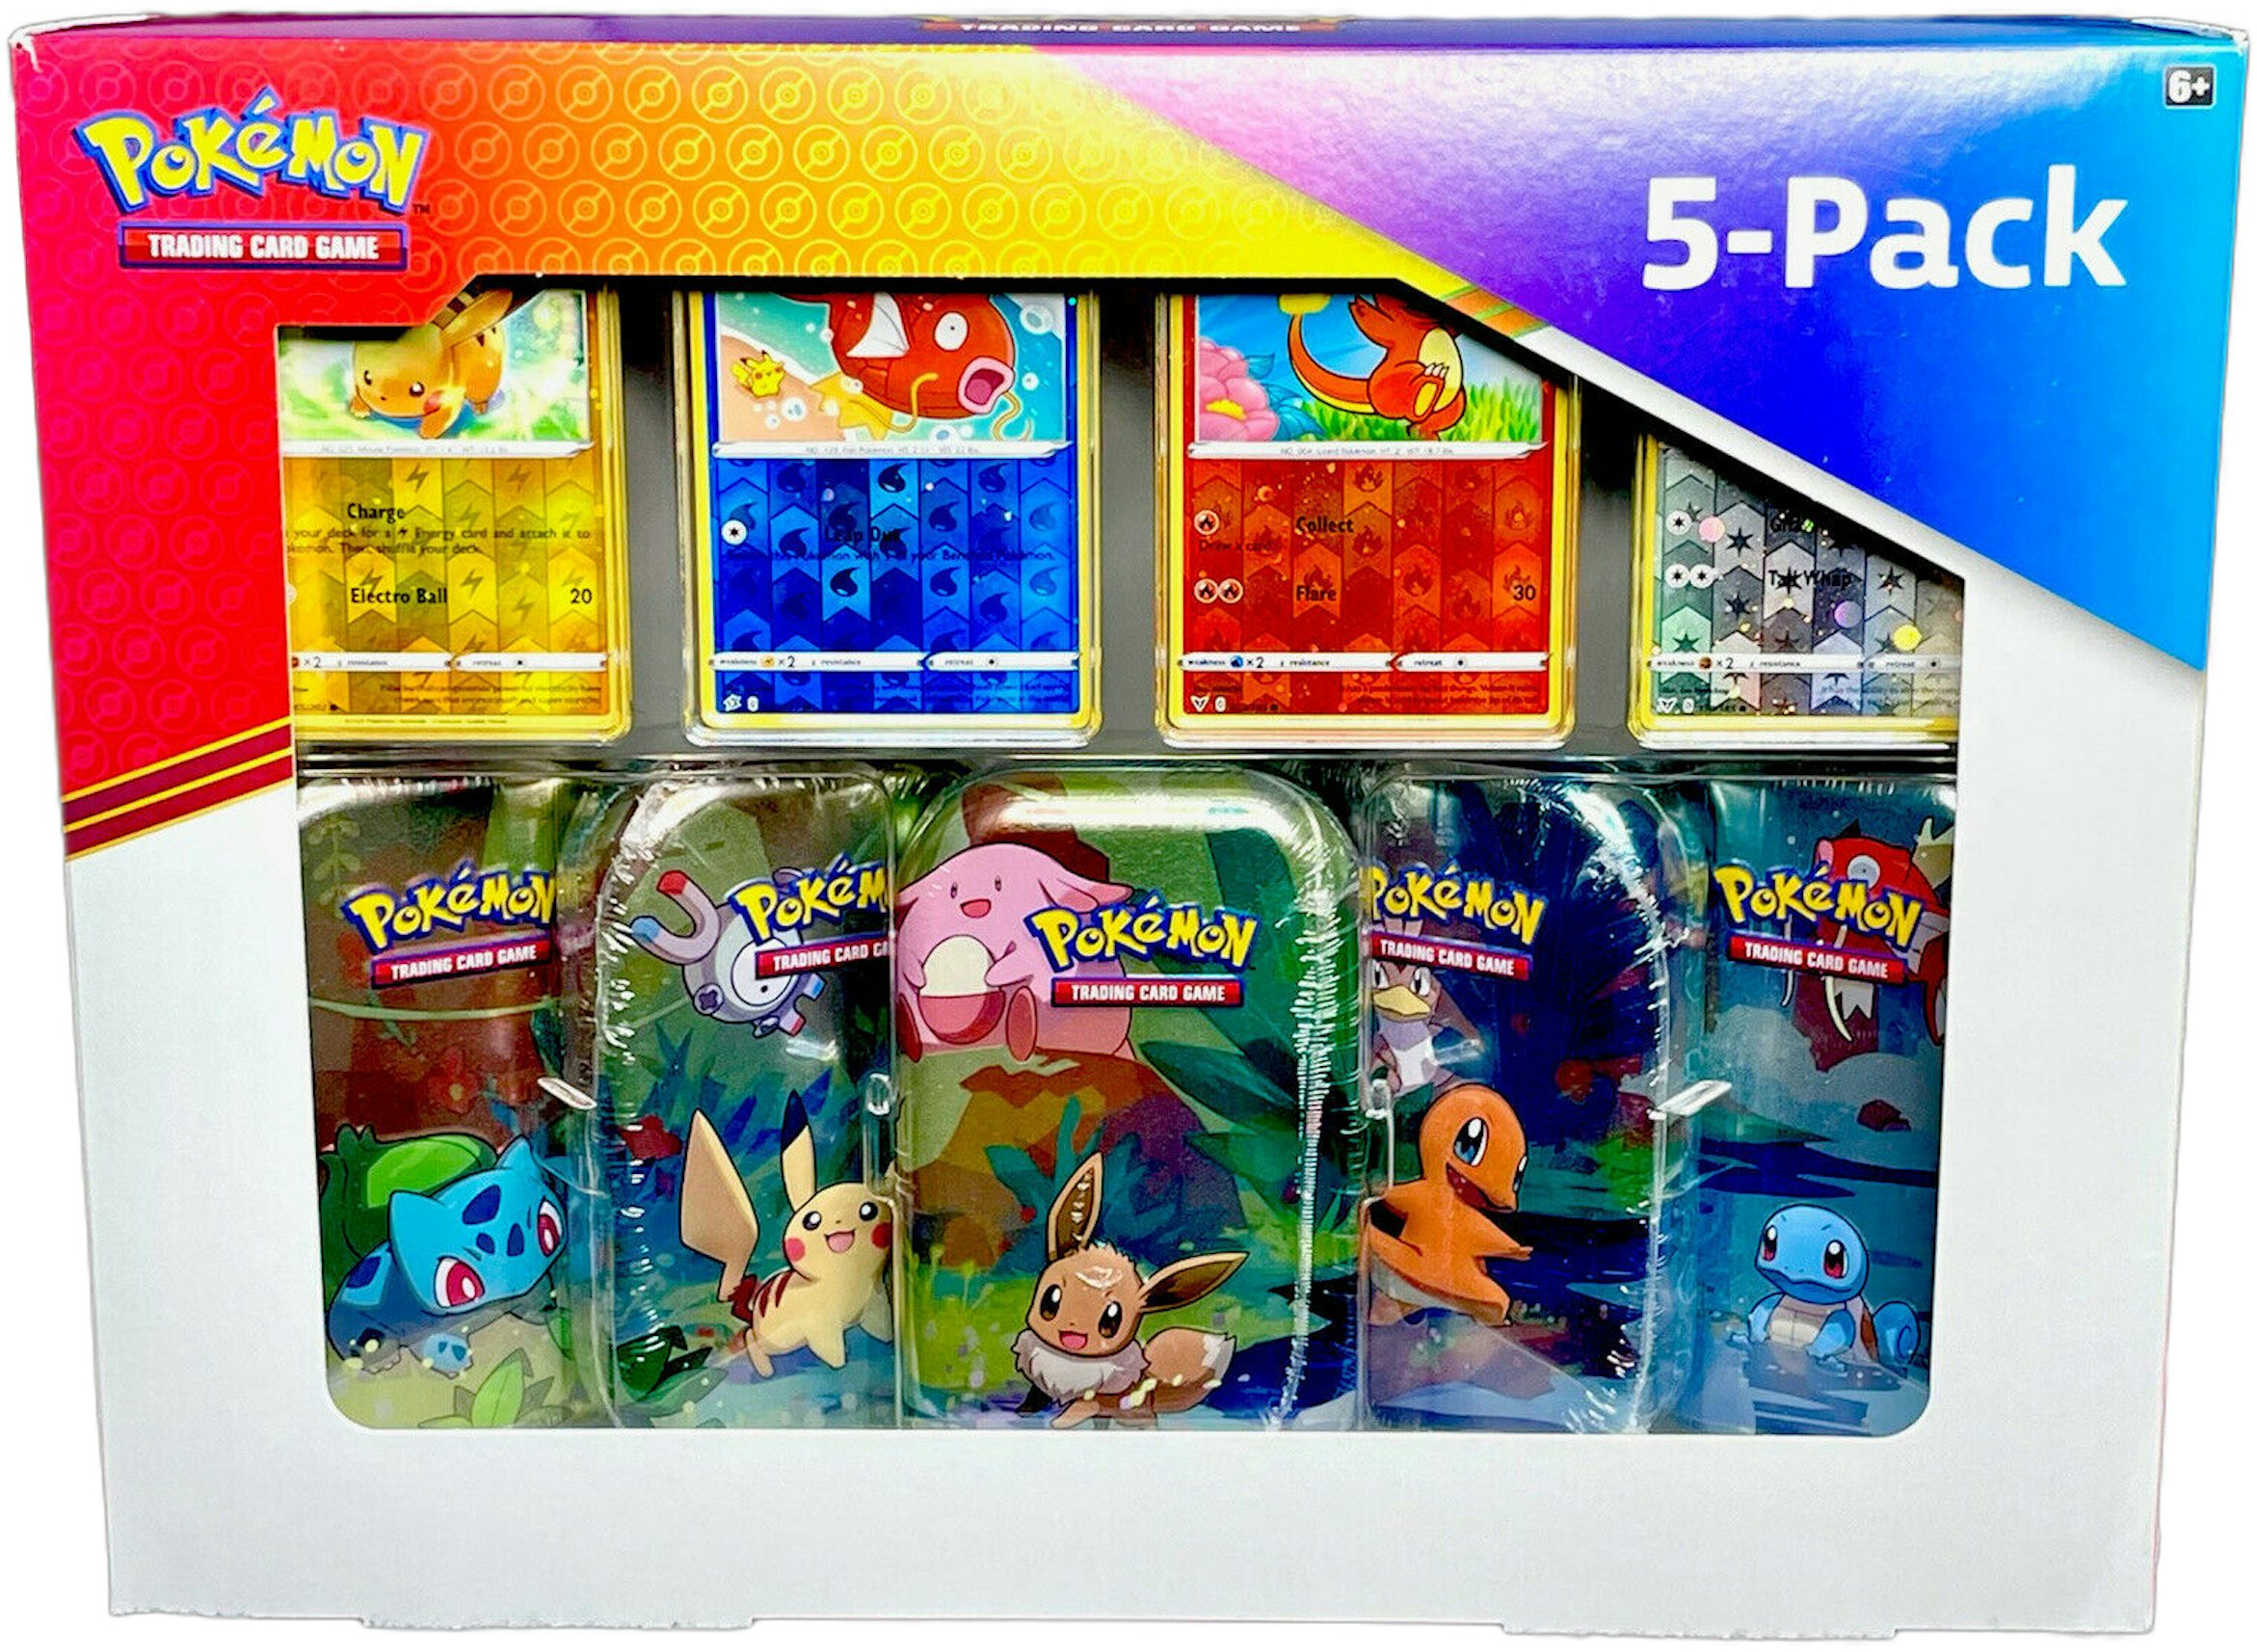 Pokémon TCG Kanto Power Mini Tin Collection Costco Exclusive Box